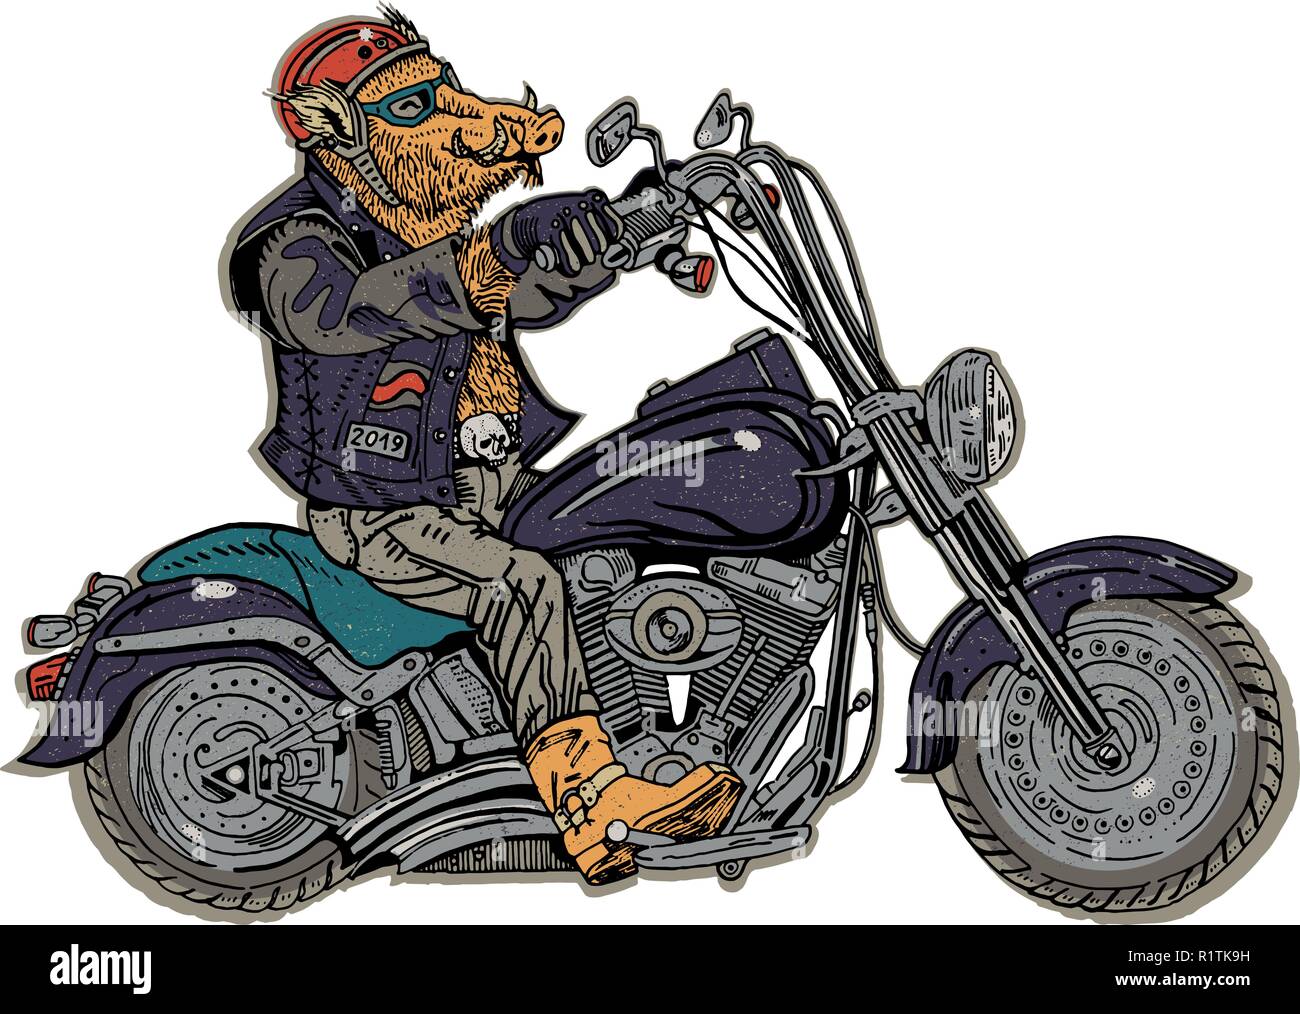 Cinghiale in moto. Biker, motociclista. Simbolo del 2019 - anno di un maiale. In stile retrò illustrazione grafica. Adesivo, poster, t-shirt, stampa tattoo. La musica rock, heavy metal. Illustrazione Vettoriale